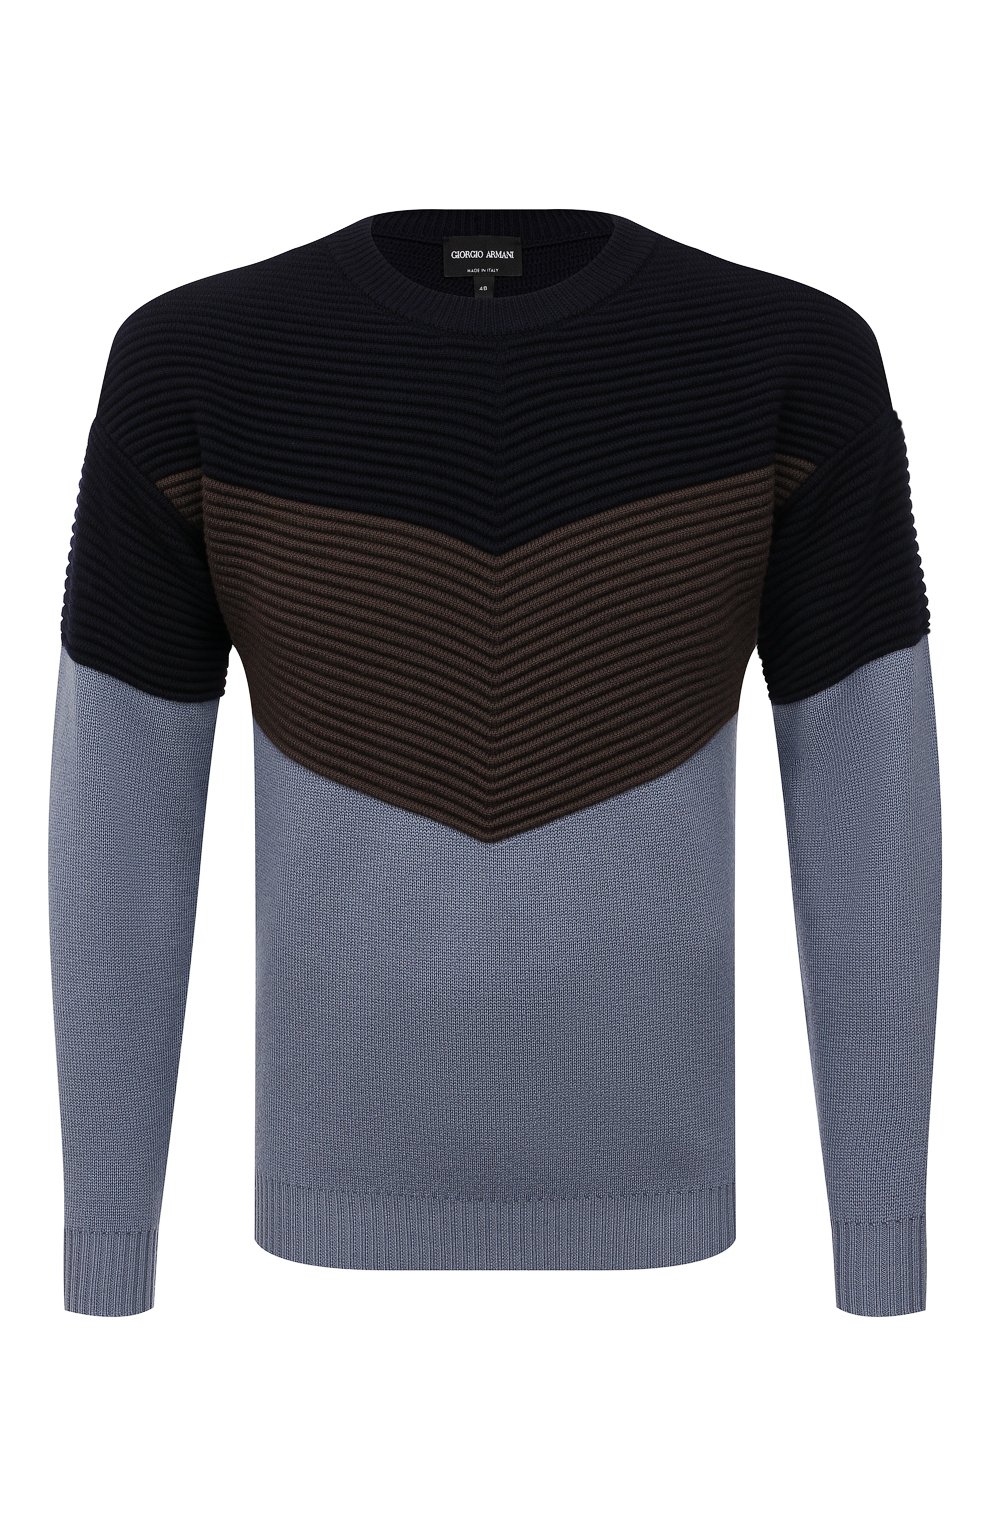 Шерстяной свитер Giorgio Armani Разноцветный 3LSM09/SM10Z 5610270